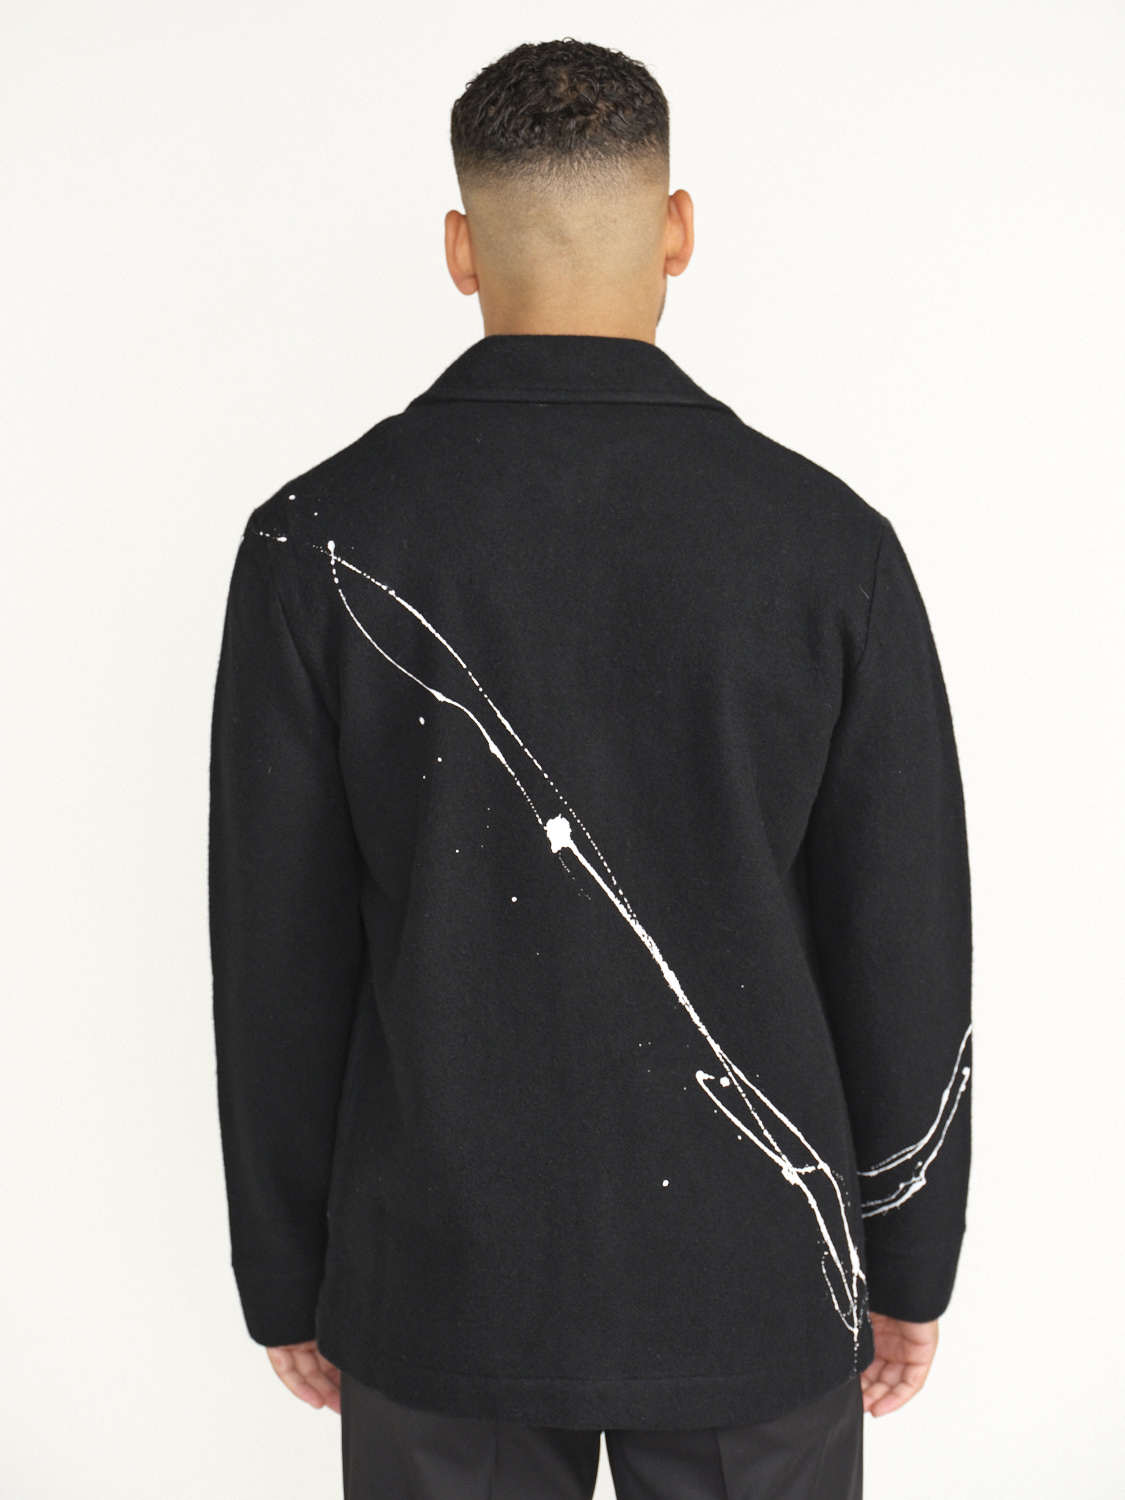 Avant Toi Jacke mit Taschen und Printdruck aus Merinowolle schwarz M